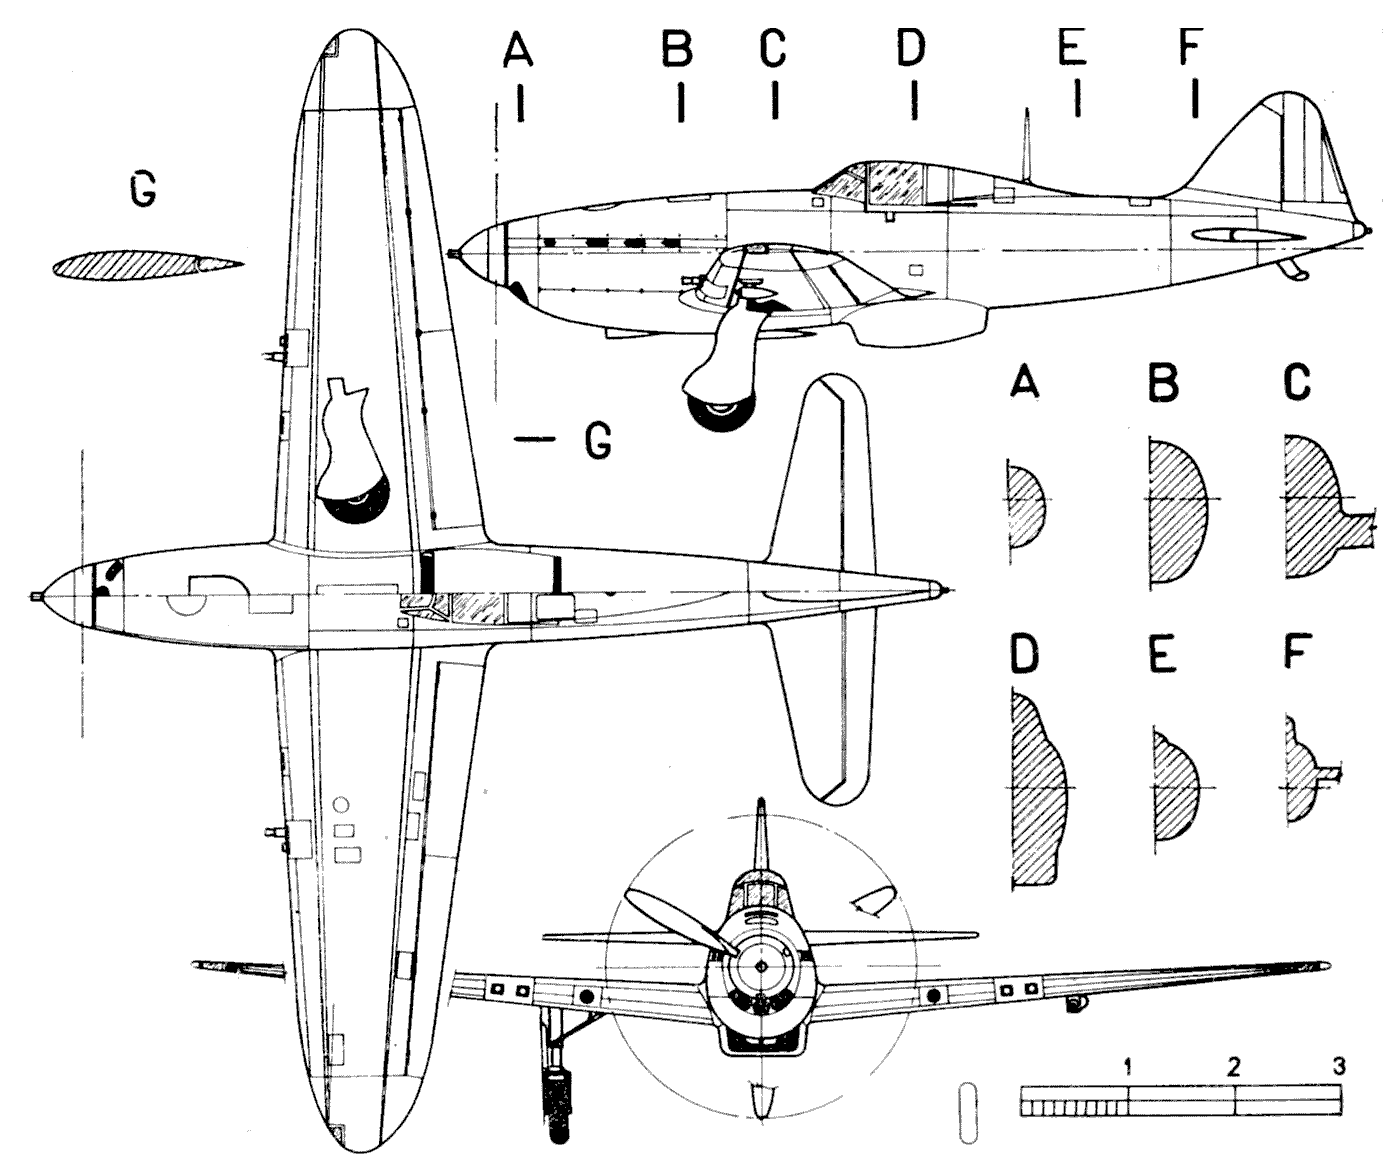 Arsenal VG-33 blueprint